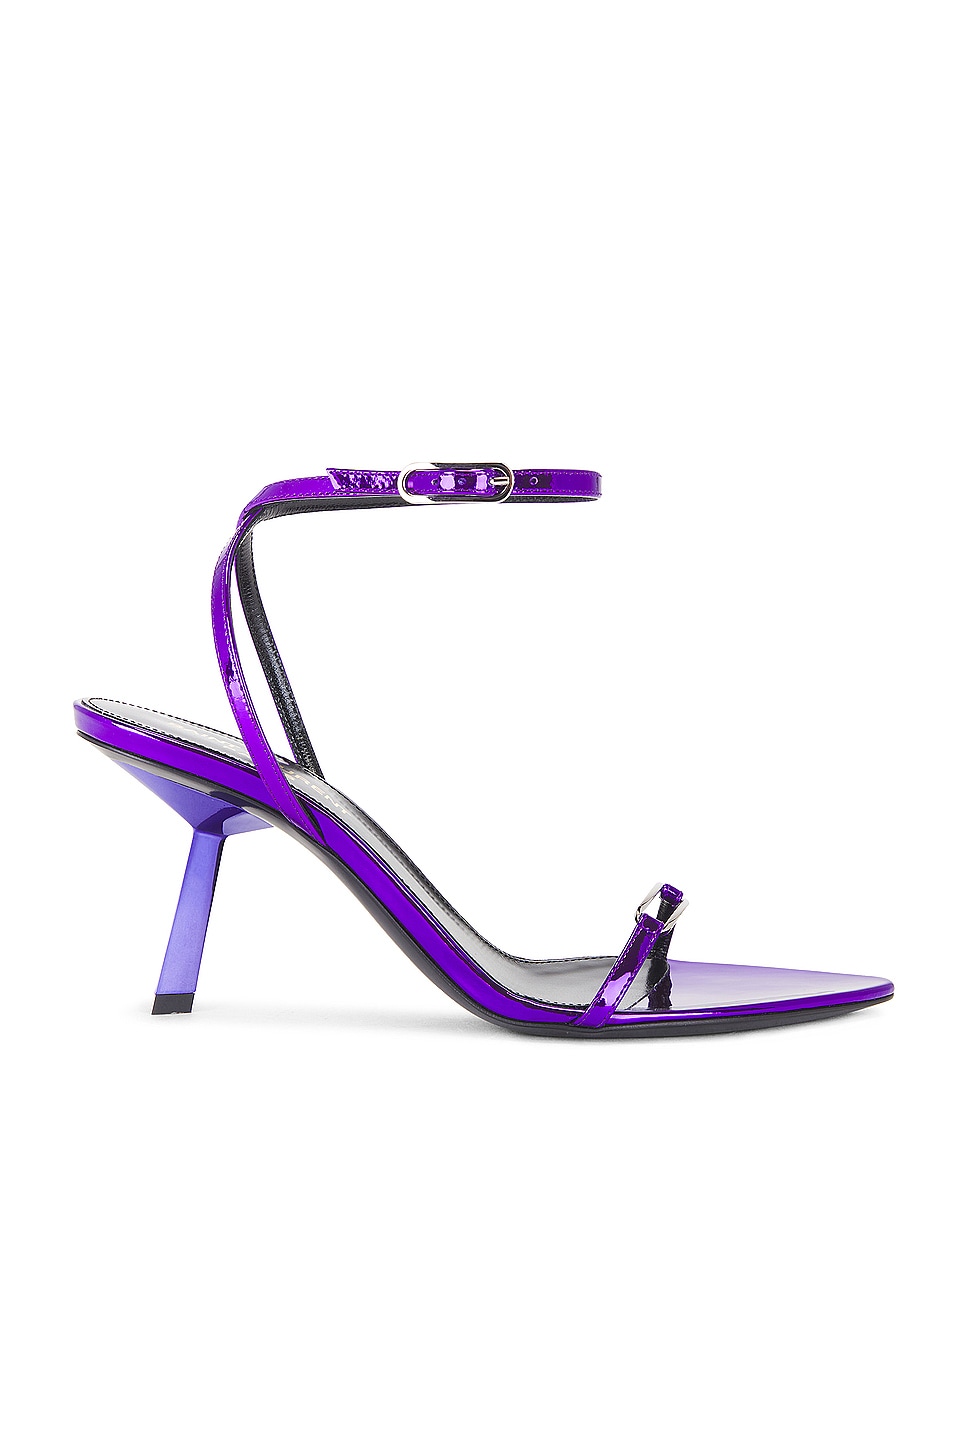 Image 1 of Saint Laurent Kitty Sandal Sandal in Plum Violet